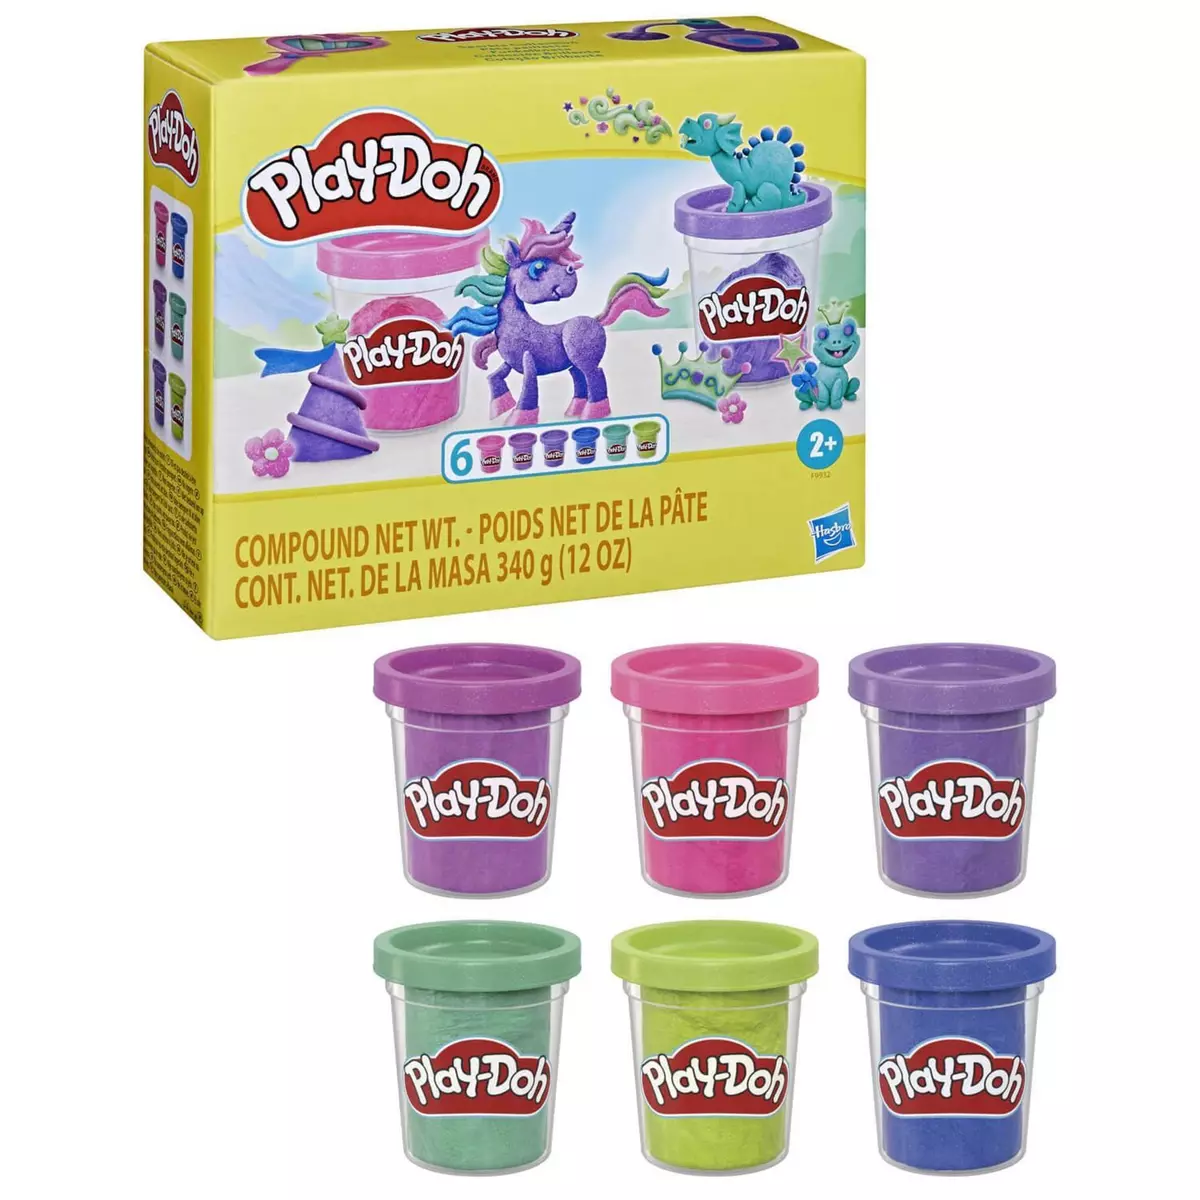 Play-Doh Coffret Play-Doh : 6 pots de pâte à modeler à paillettes